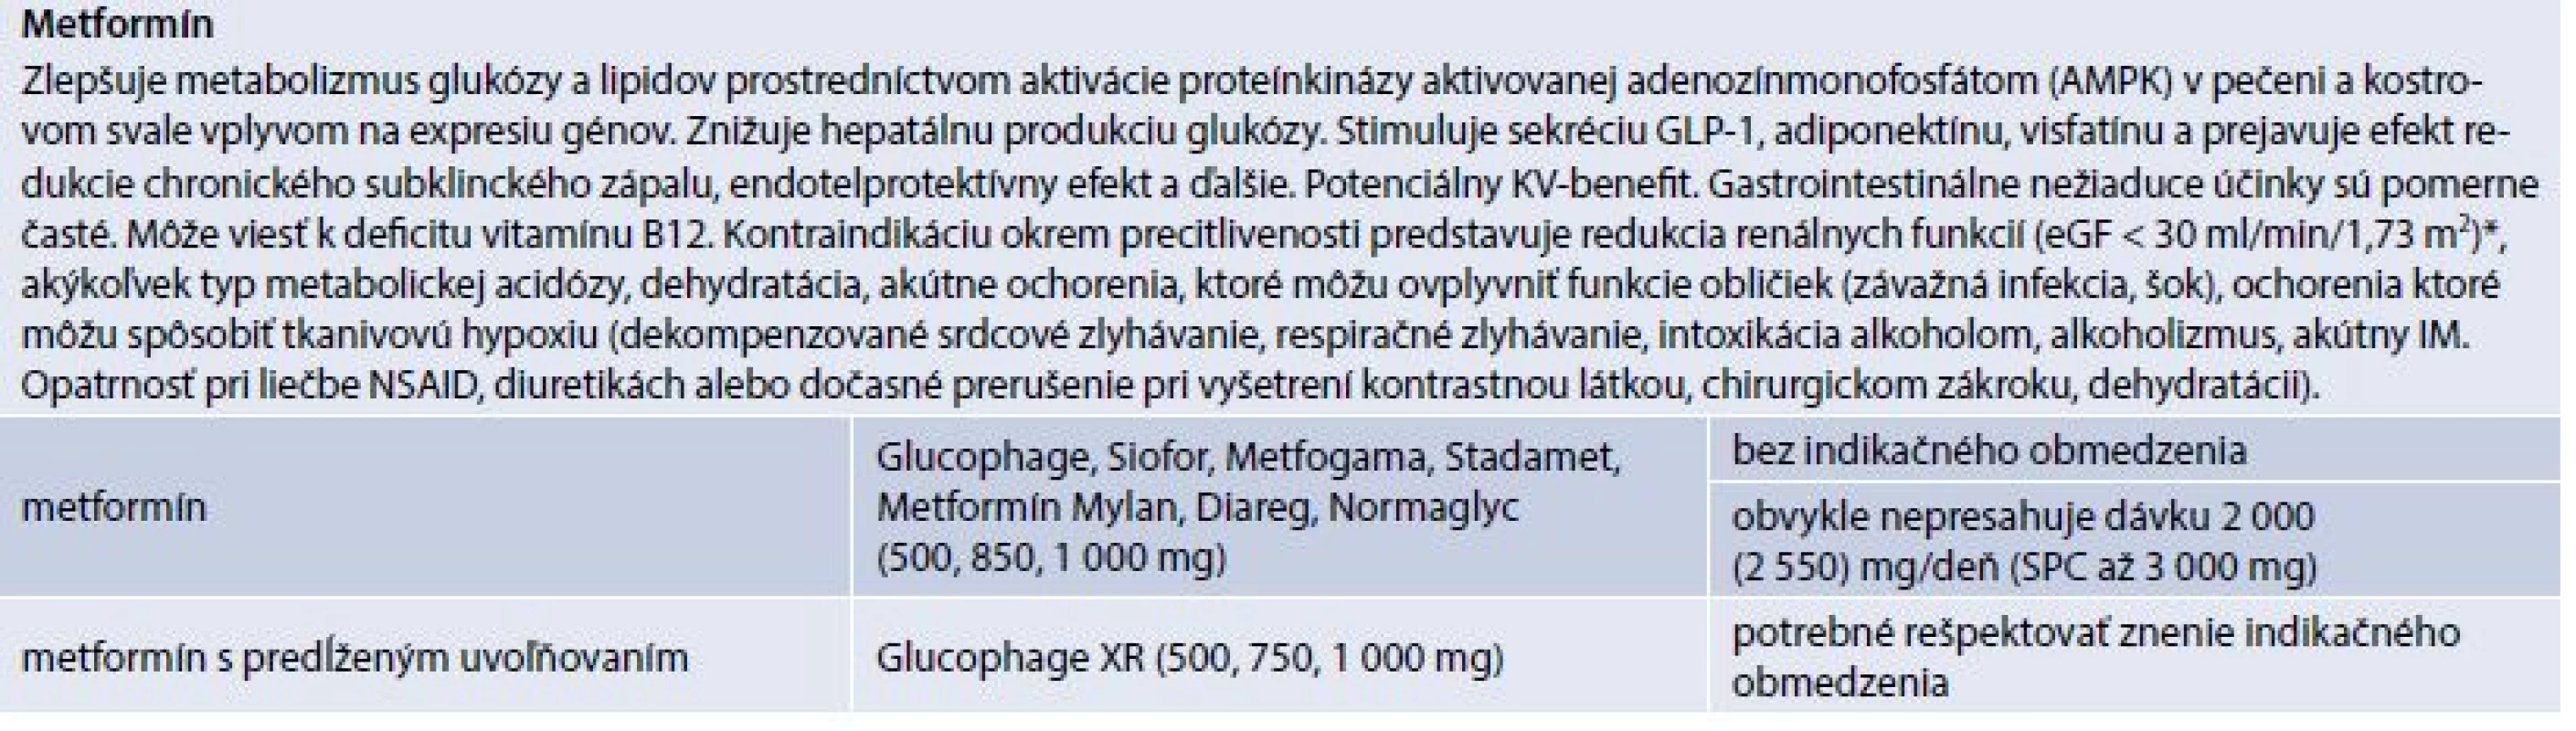 Metformín (prípravky kategorizované na Slovensku)